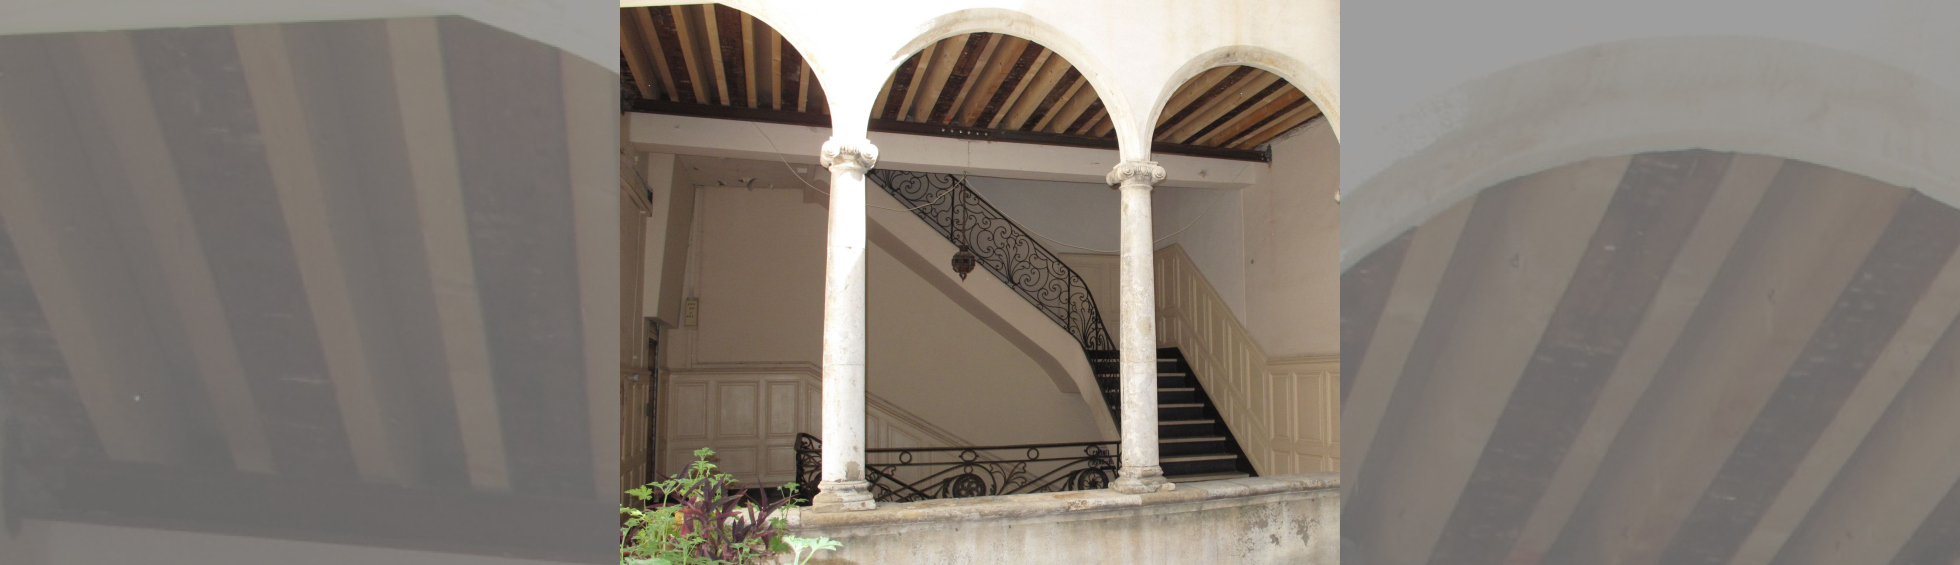 Colonnade avec arc de plein cintre, escalier et rampe en fer forgé du style 18 ième 